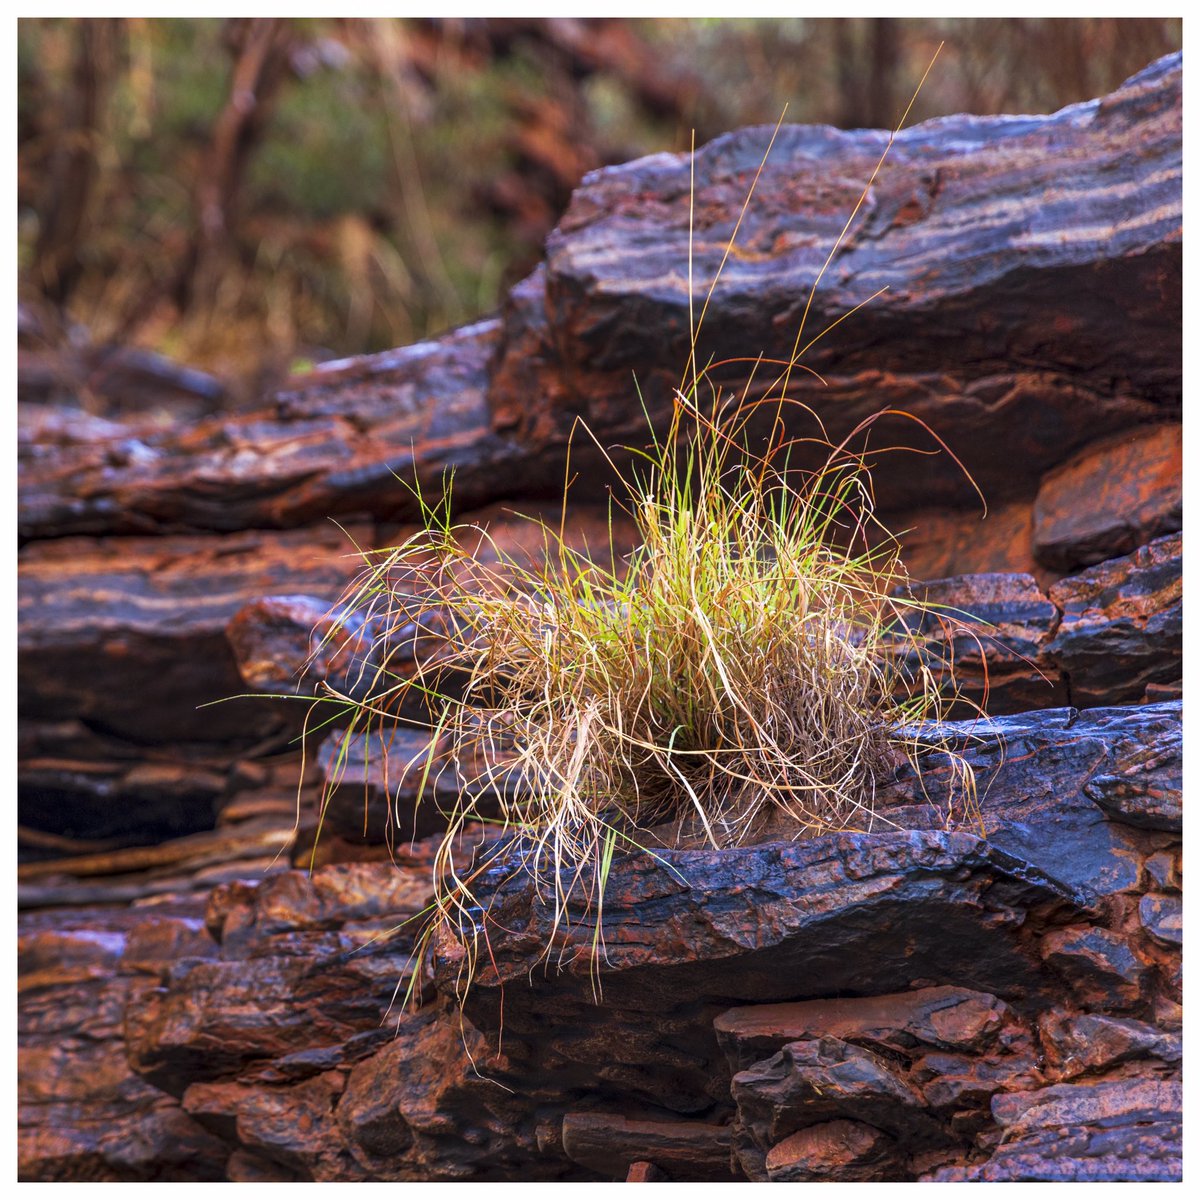 Grass in the Pilbara 

#Nature  #photography #landscapephotography  #snap_photo  #kuhlmtnculture #pilbara #3leggedthing  #colours  #desert  #pilbara #storm #grass